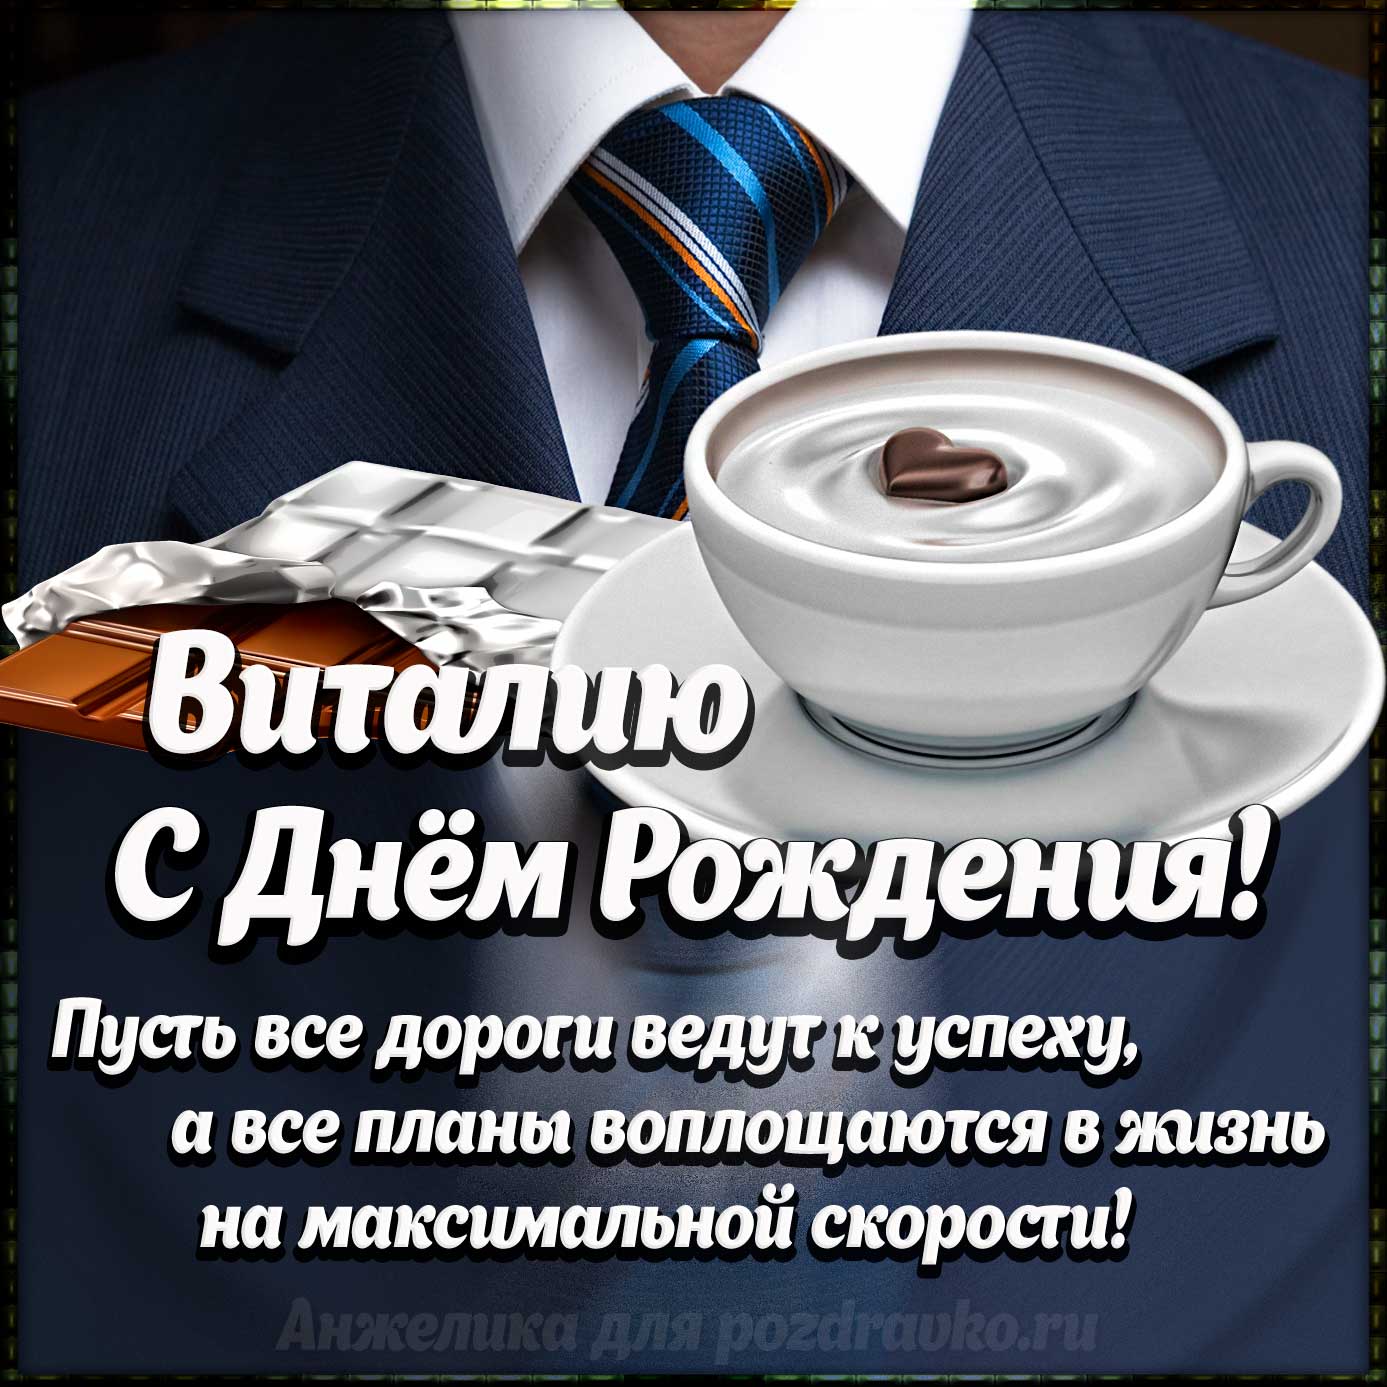 Открытка - Виталию с Днем Рождения с галстуком, кофе и пожеланием. Скачать бесплатно или отправить картинку.